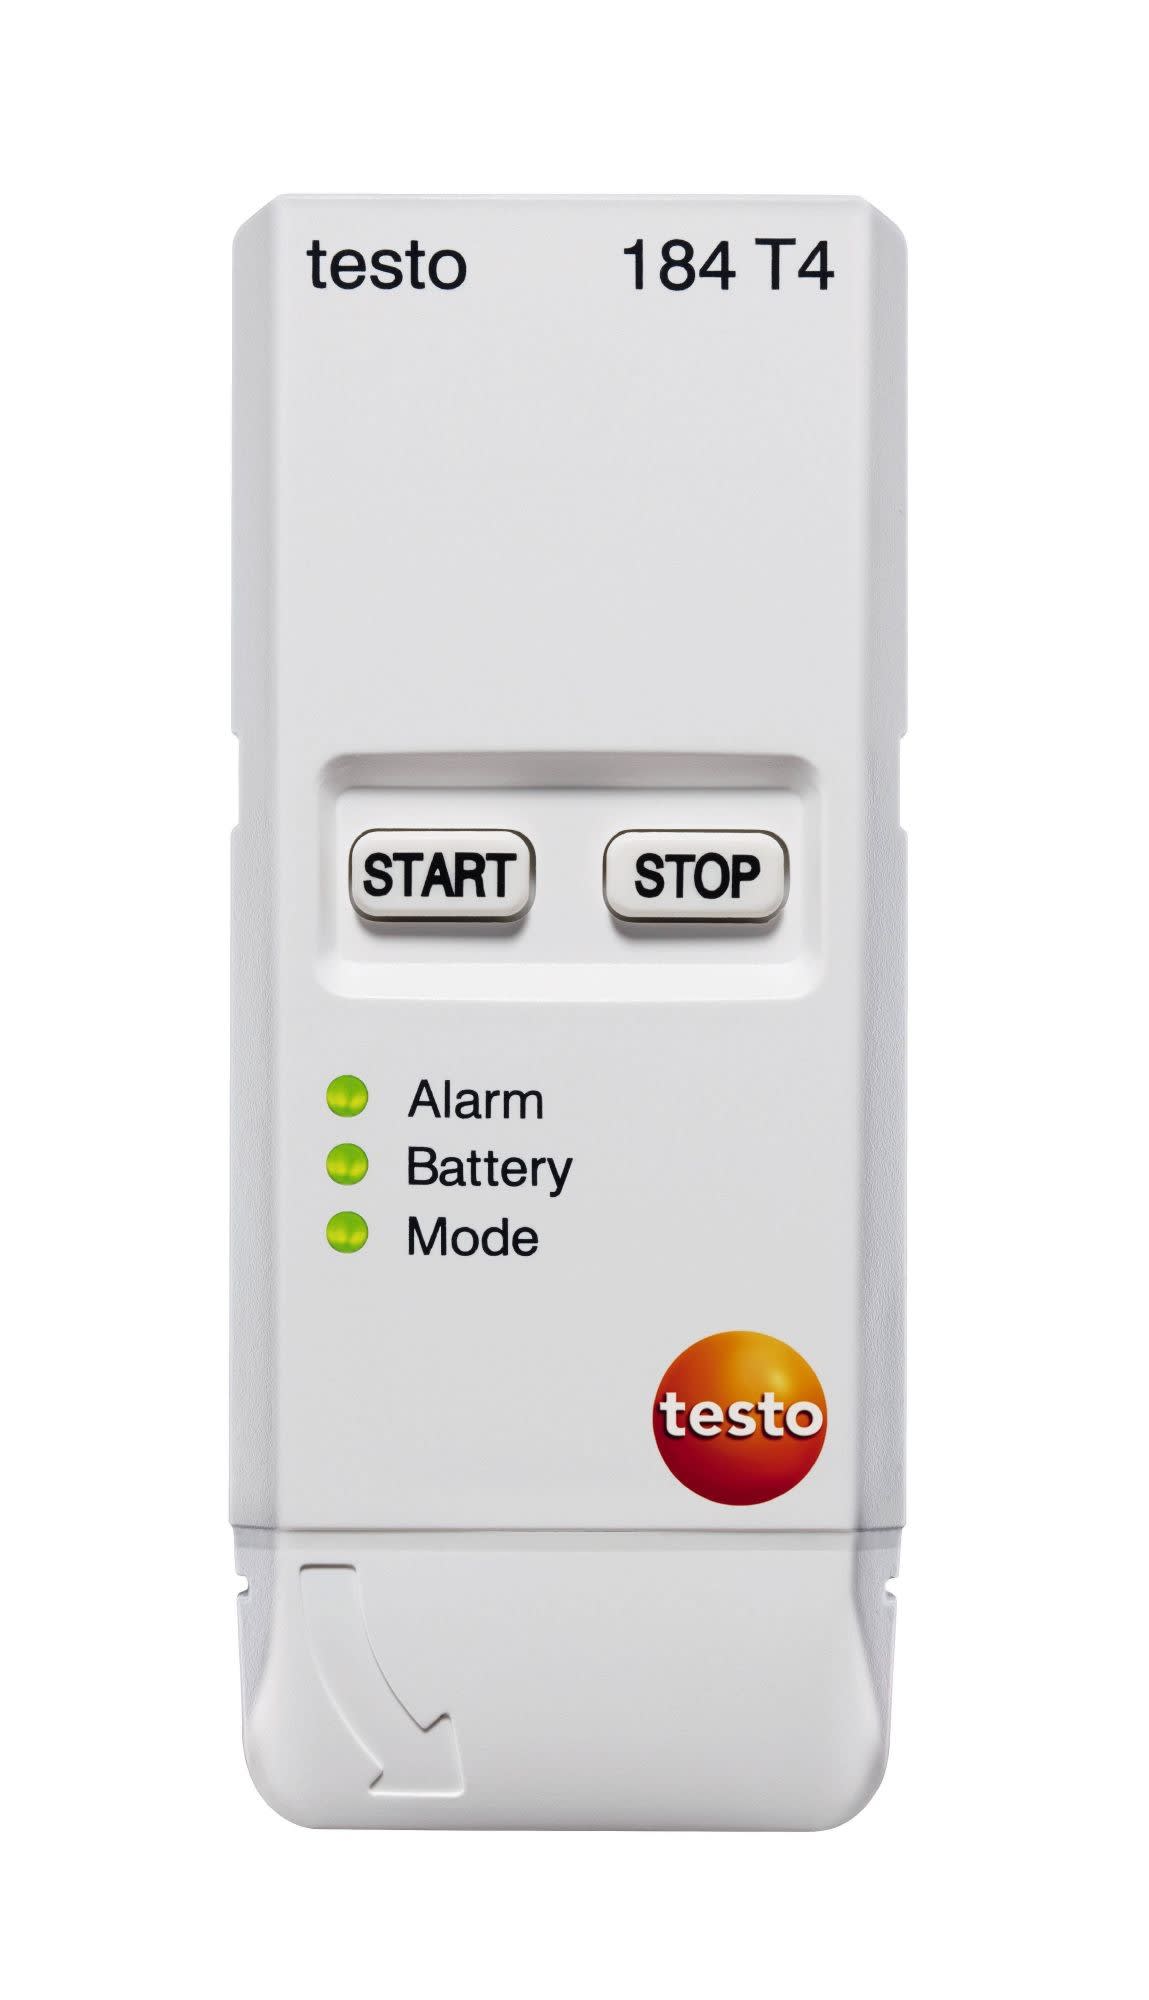 TESTO - testo 184 T4 - Cle USB Enregistreur de temperature reutilisable jusqu'a -80C